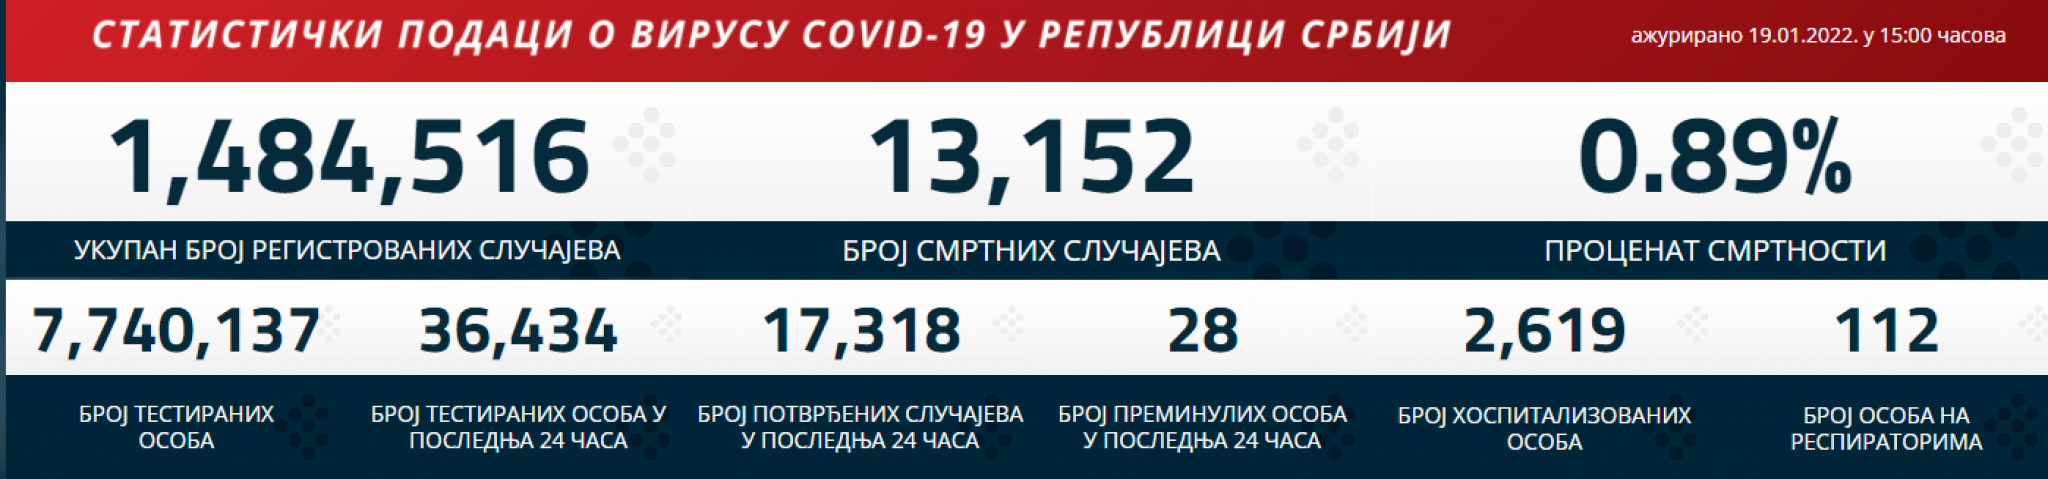 KORONA PRESEK ZA 20. JANUAR Najnovije informacije o broju zaraženih koronavirusom u Srbiji